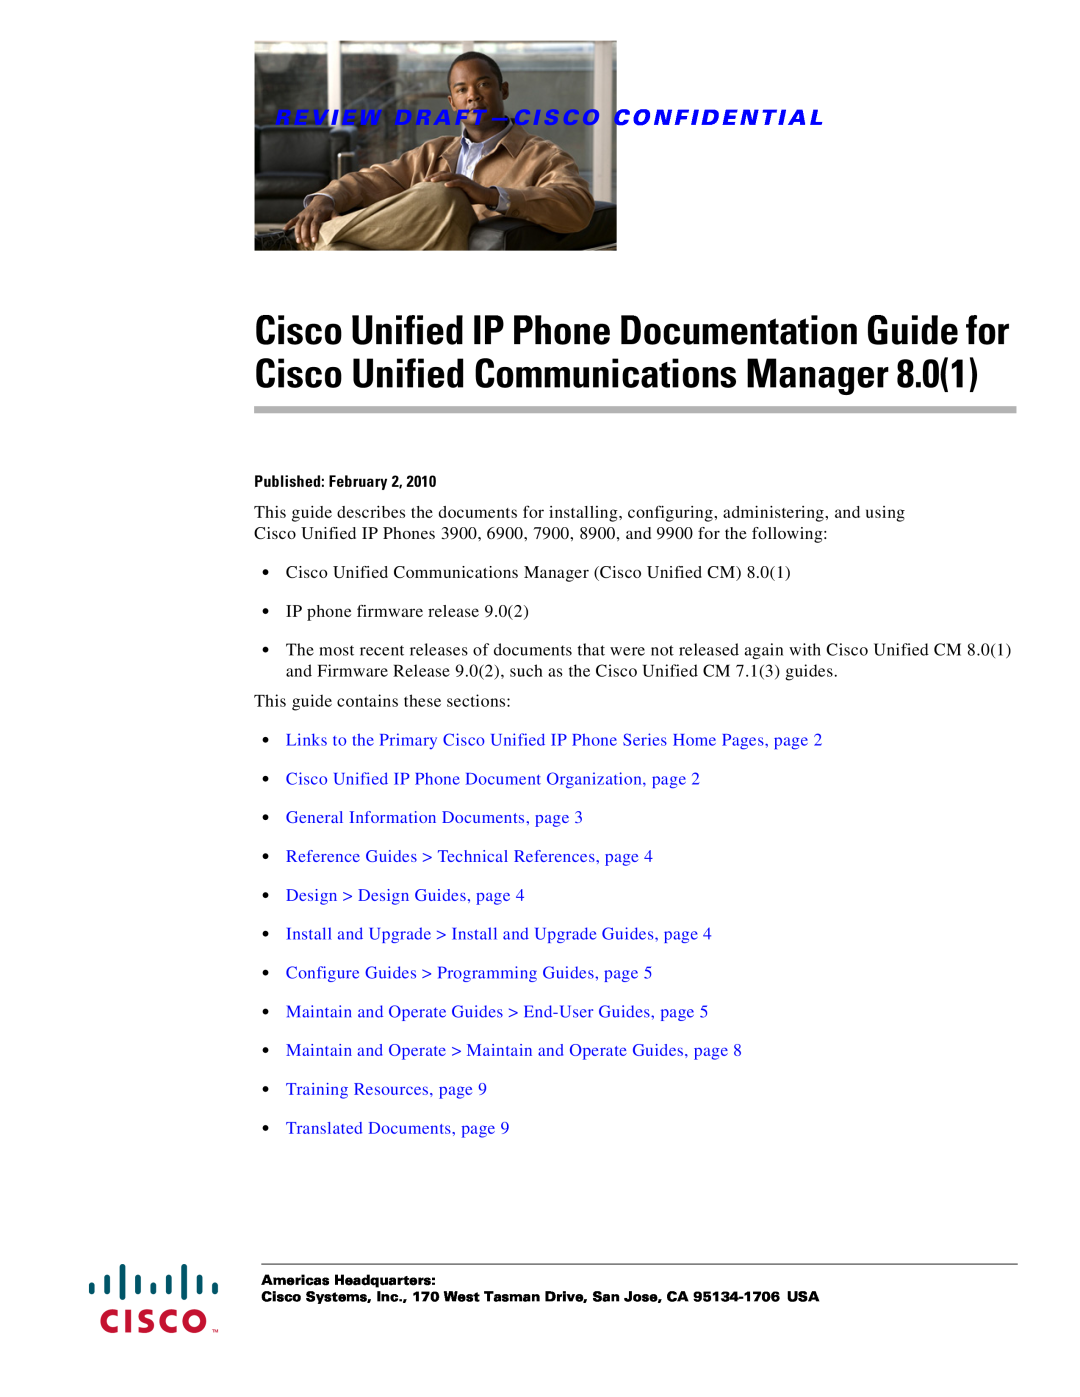 Cisco Systems 6900, 3900, 9900 manual Review Draft - Cisco Confidential 